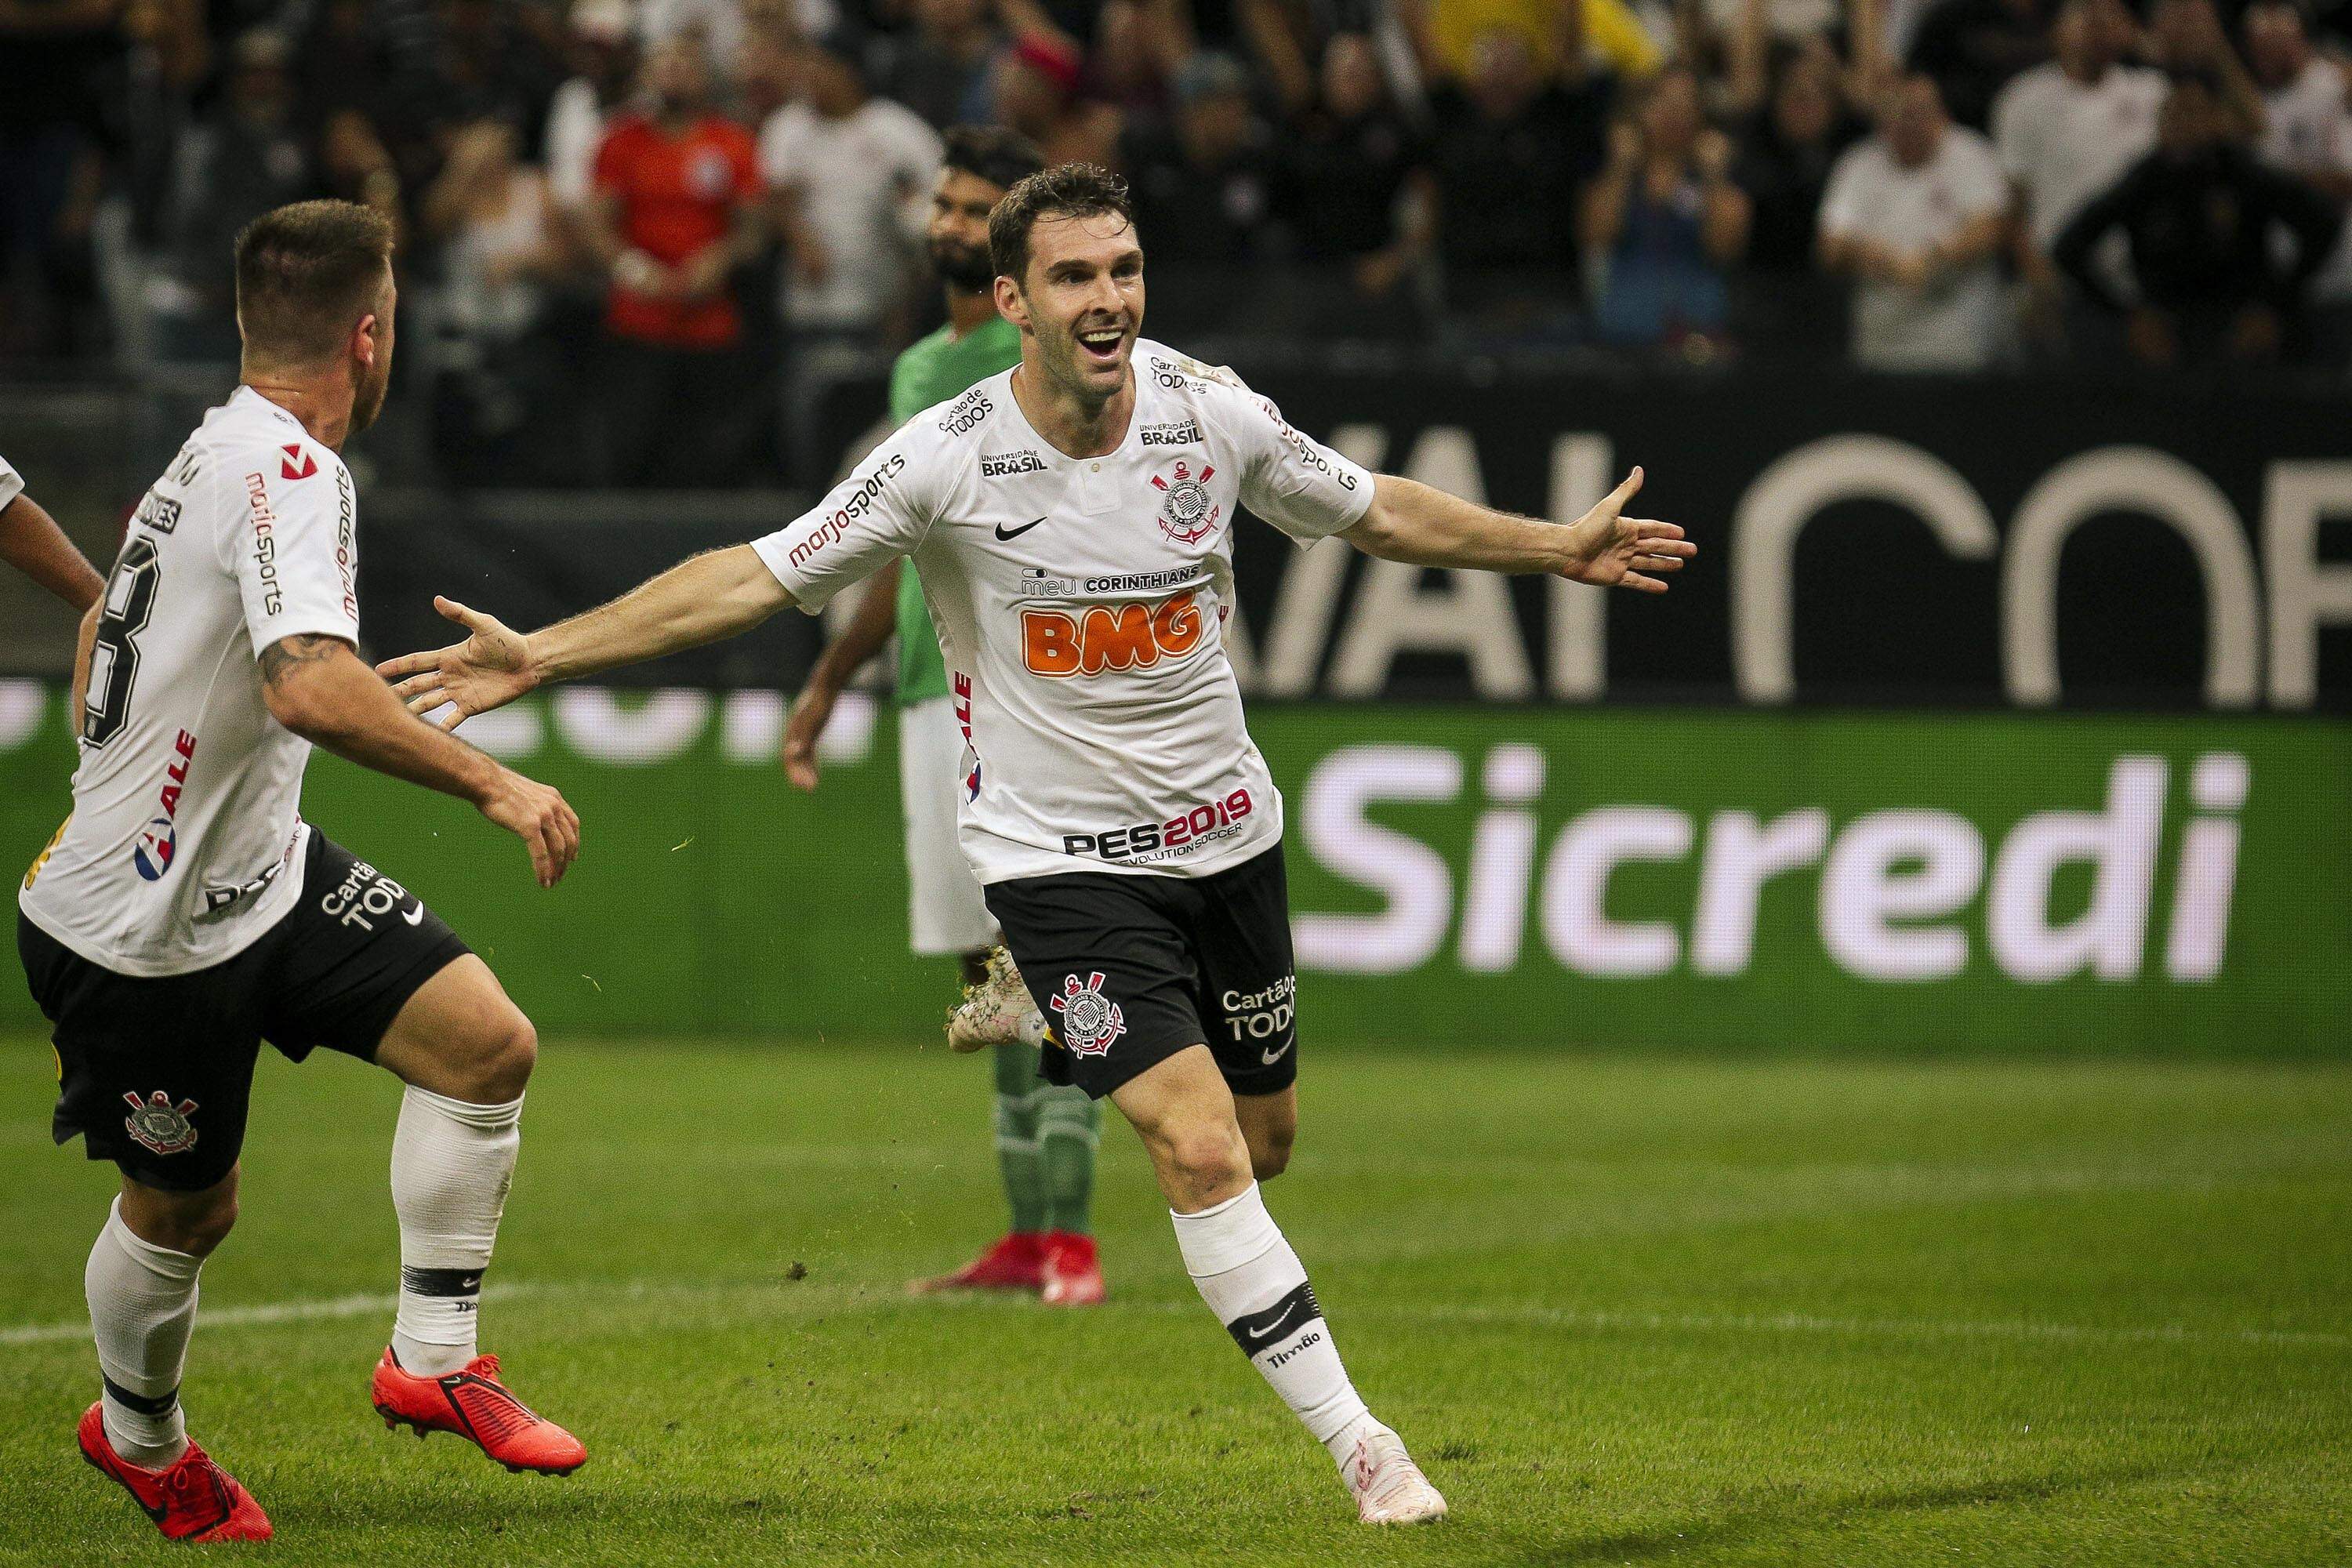 Depois de muitos jogos, Boselli desencantou e marcou seu segundo gol com a camisa do Corinthians